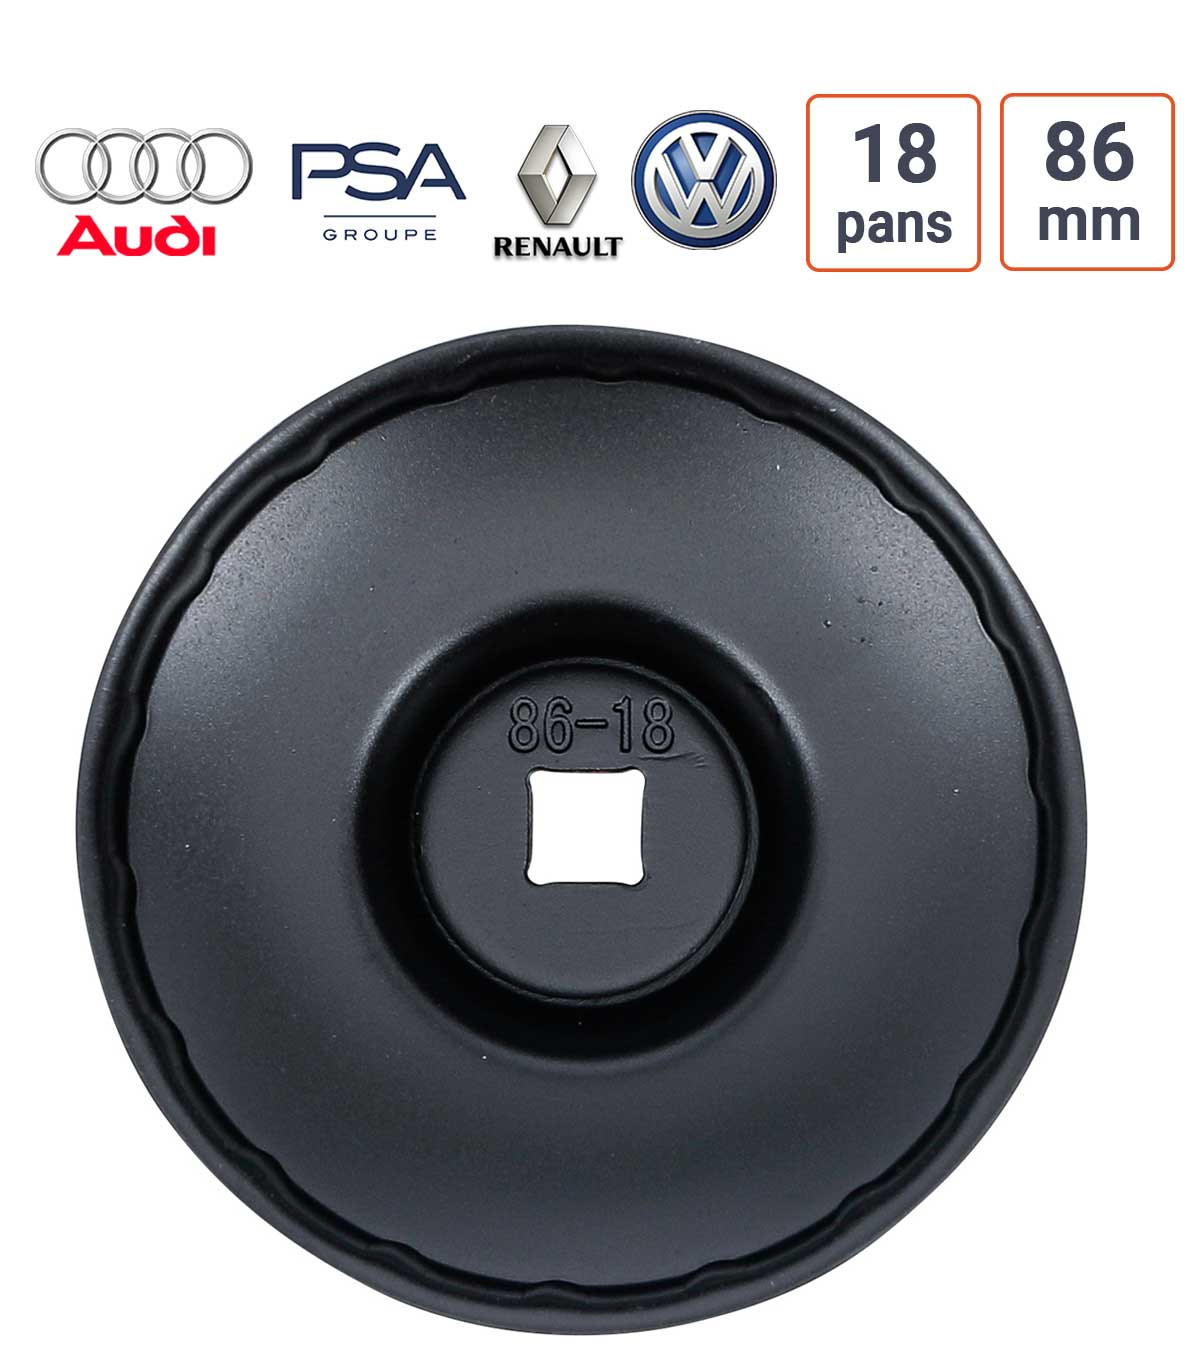 Cloche à filtre à huile 18 pans 86 mm pour Audi, PSA, Renault, GOlf